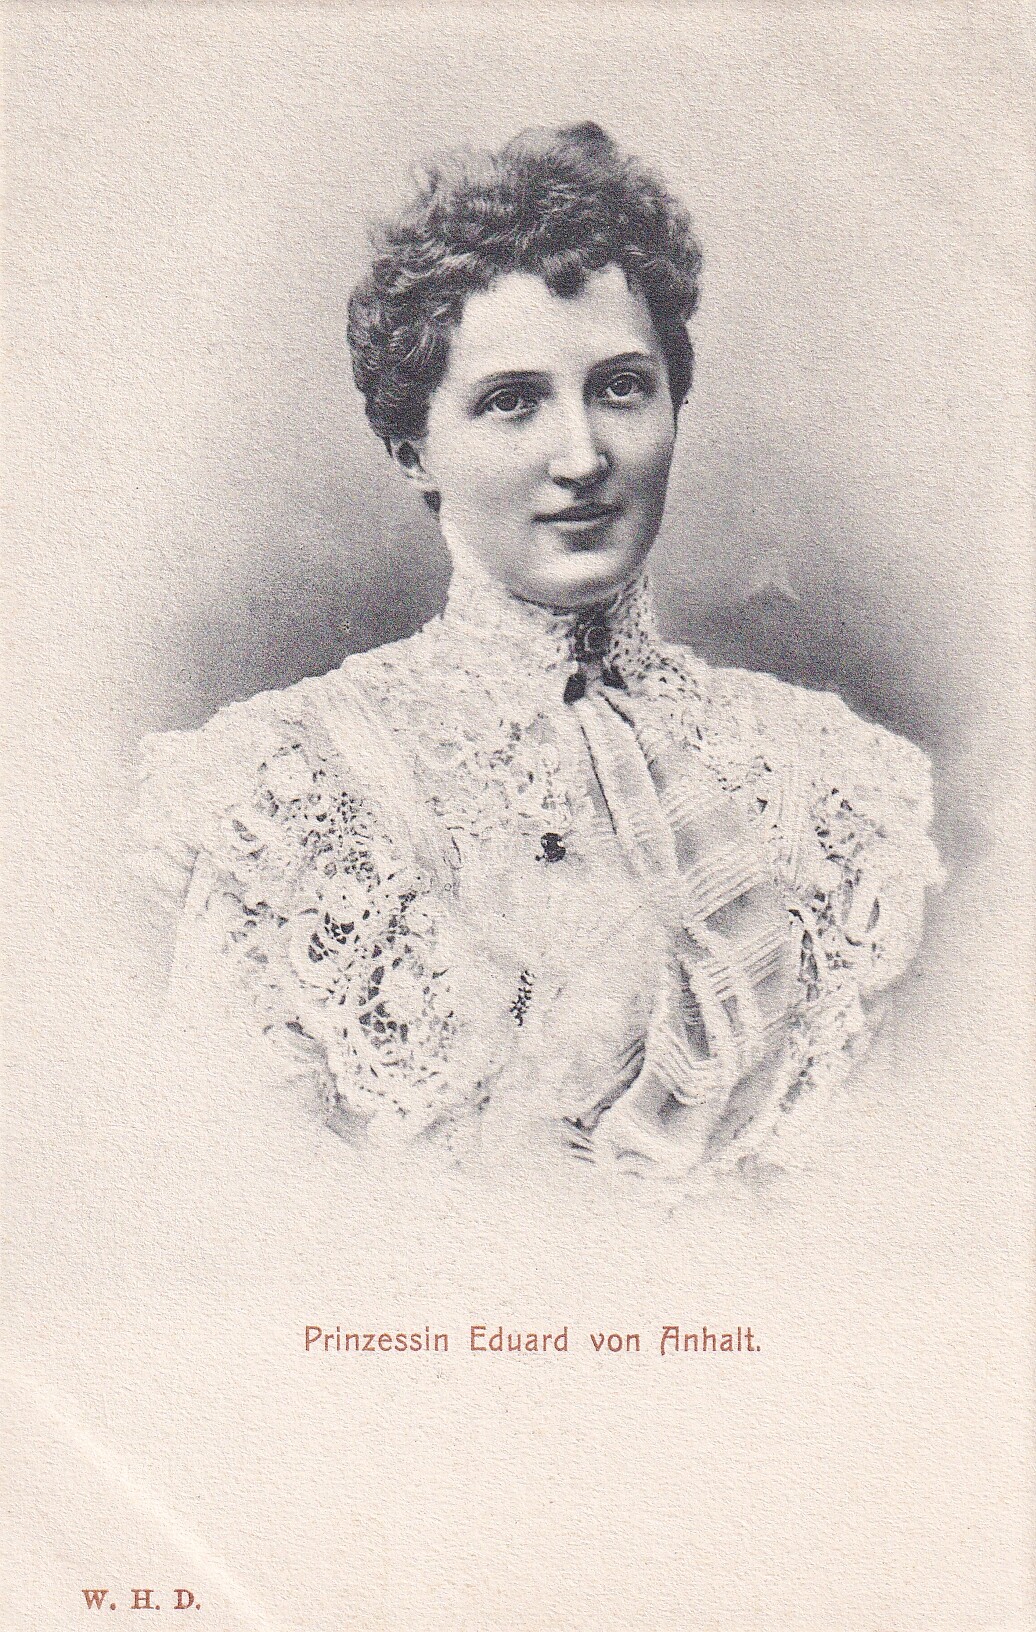 Bildpostkarte mit Foto der Prinzessin Luise von Anhalt, um 1900 (Schloß Wernigerode GmbH RR-F)